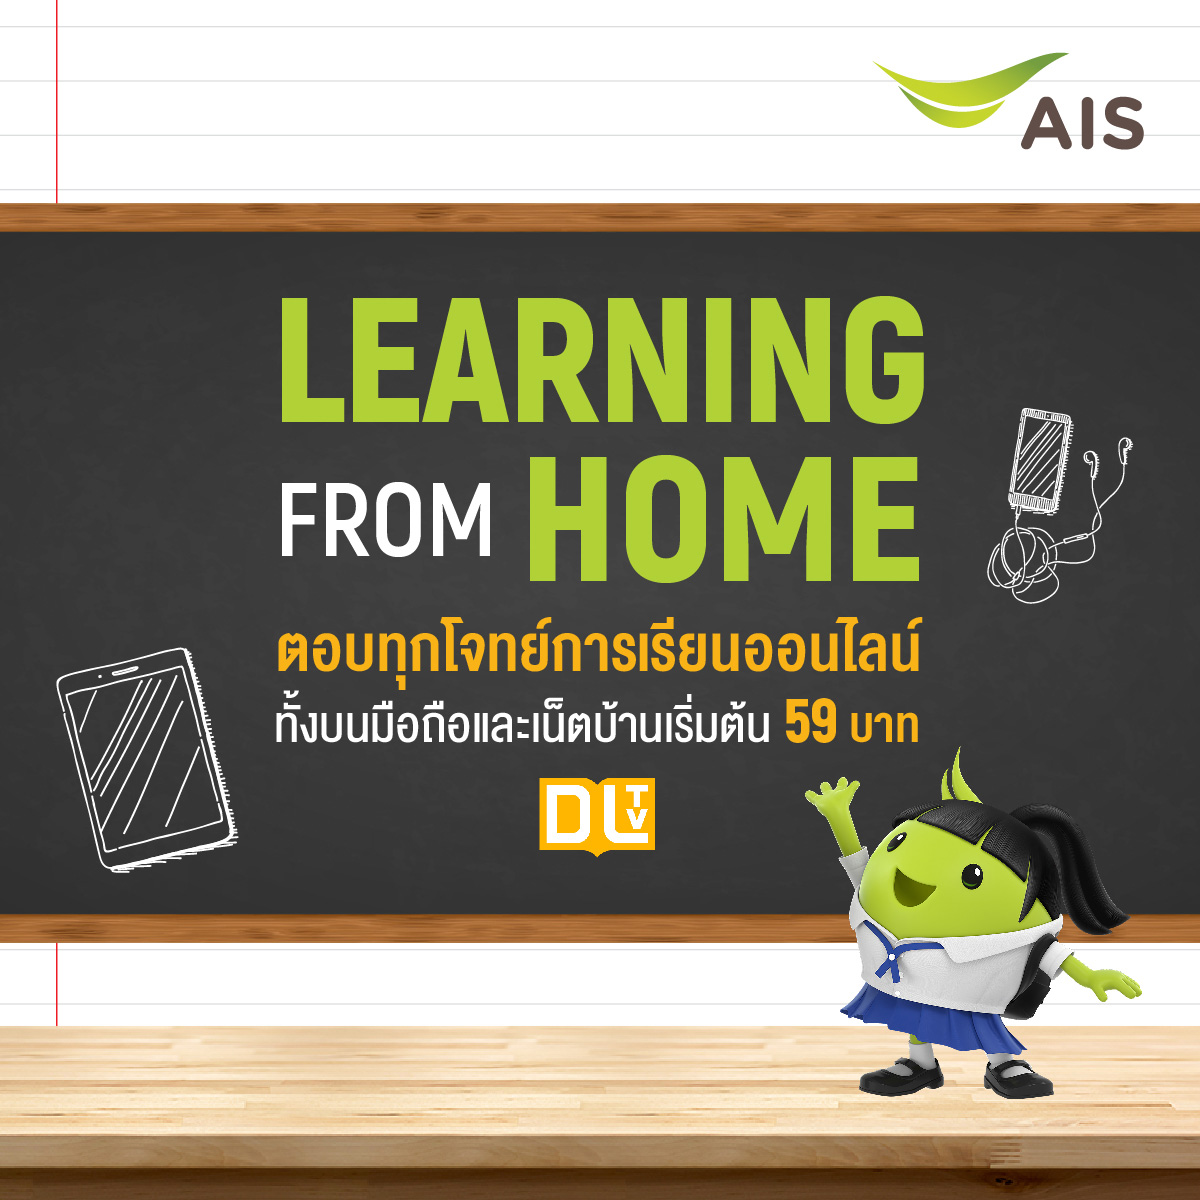 เอไอเอส ห่วงใยเด็กไทย จัดแพ็กมือถือ/เน็ตบ้าน LEARNING FROM HOME สุดประหยัด เสิร์ฟ สมาร์ทโฟนพร้อมใช้ ตอบทุกโจทย์การเรียนออนไลน์ยุคใหม่